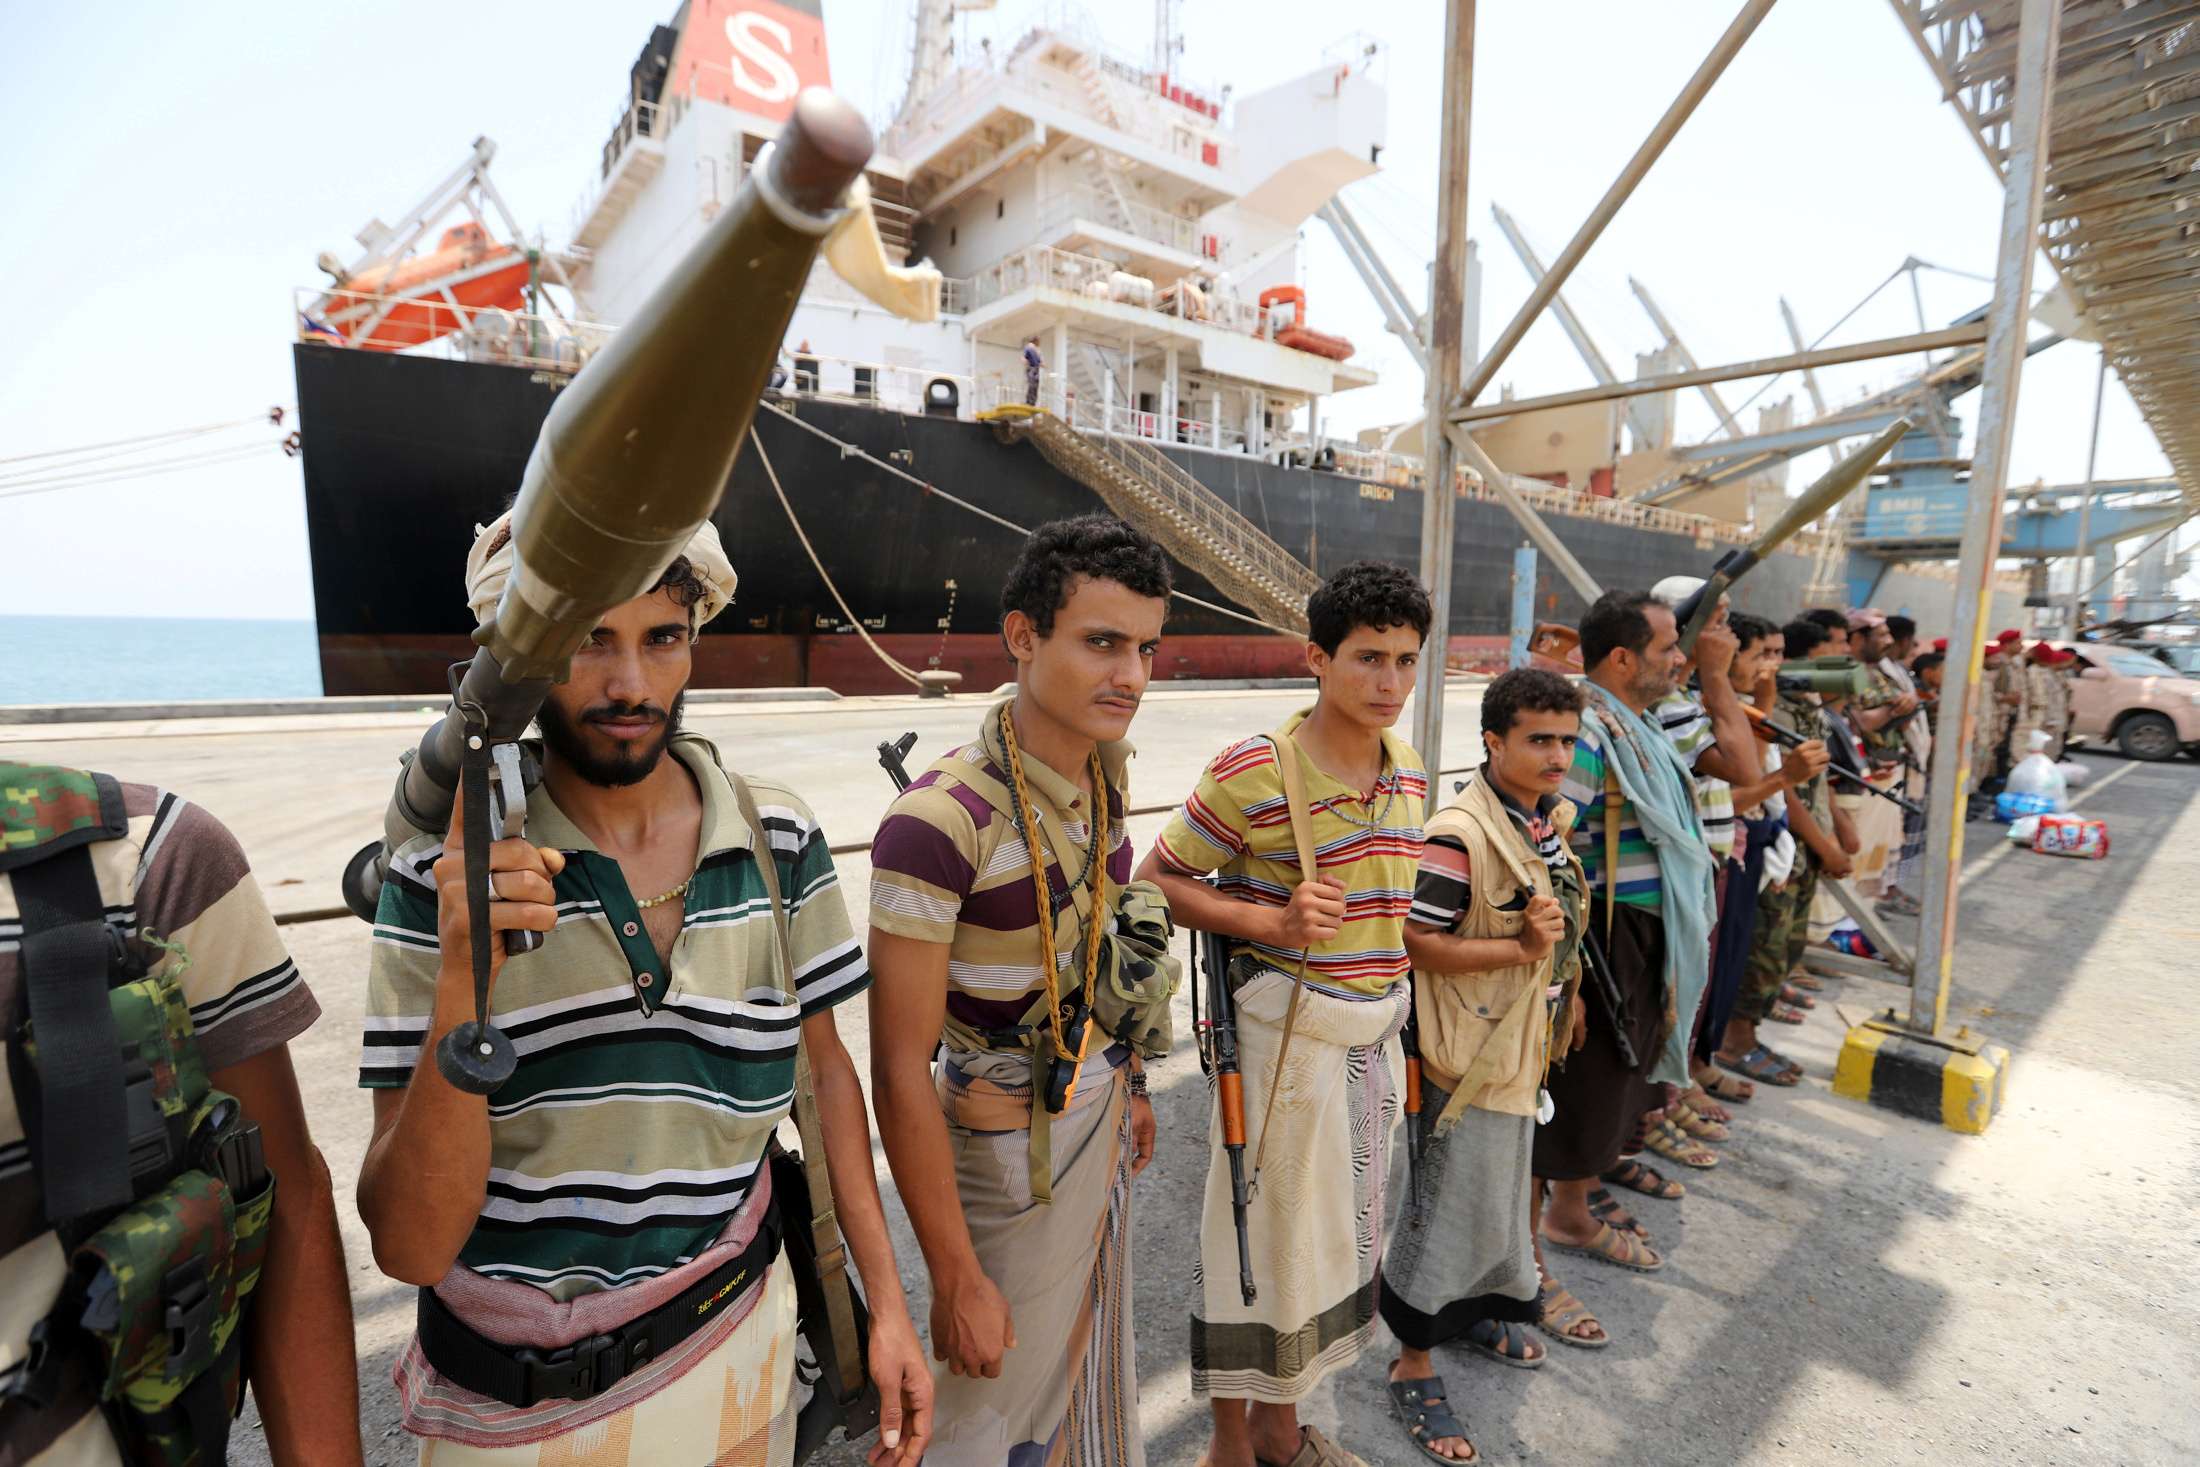 جماعة الحوثي تشق جهود السلام الدولية في اليمن